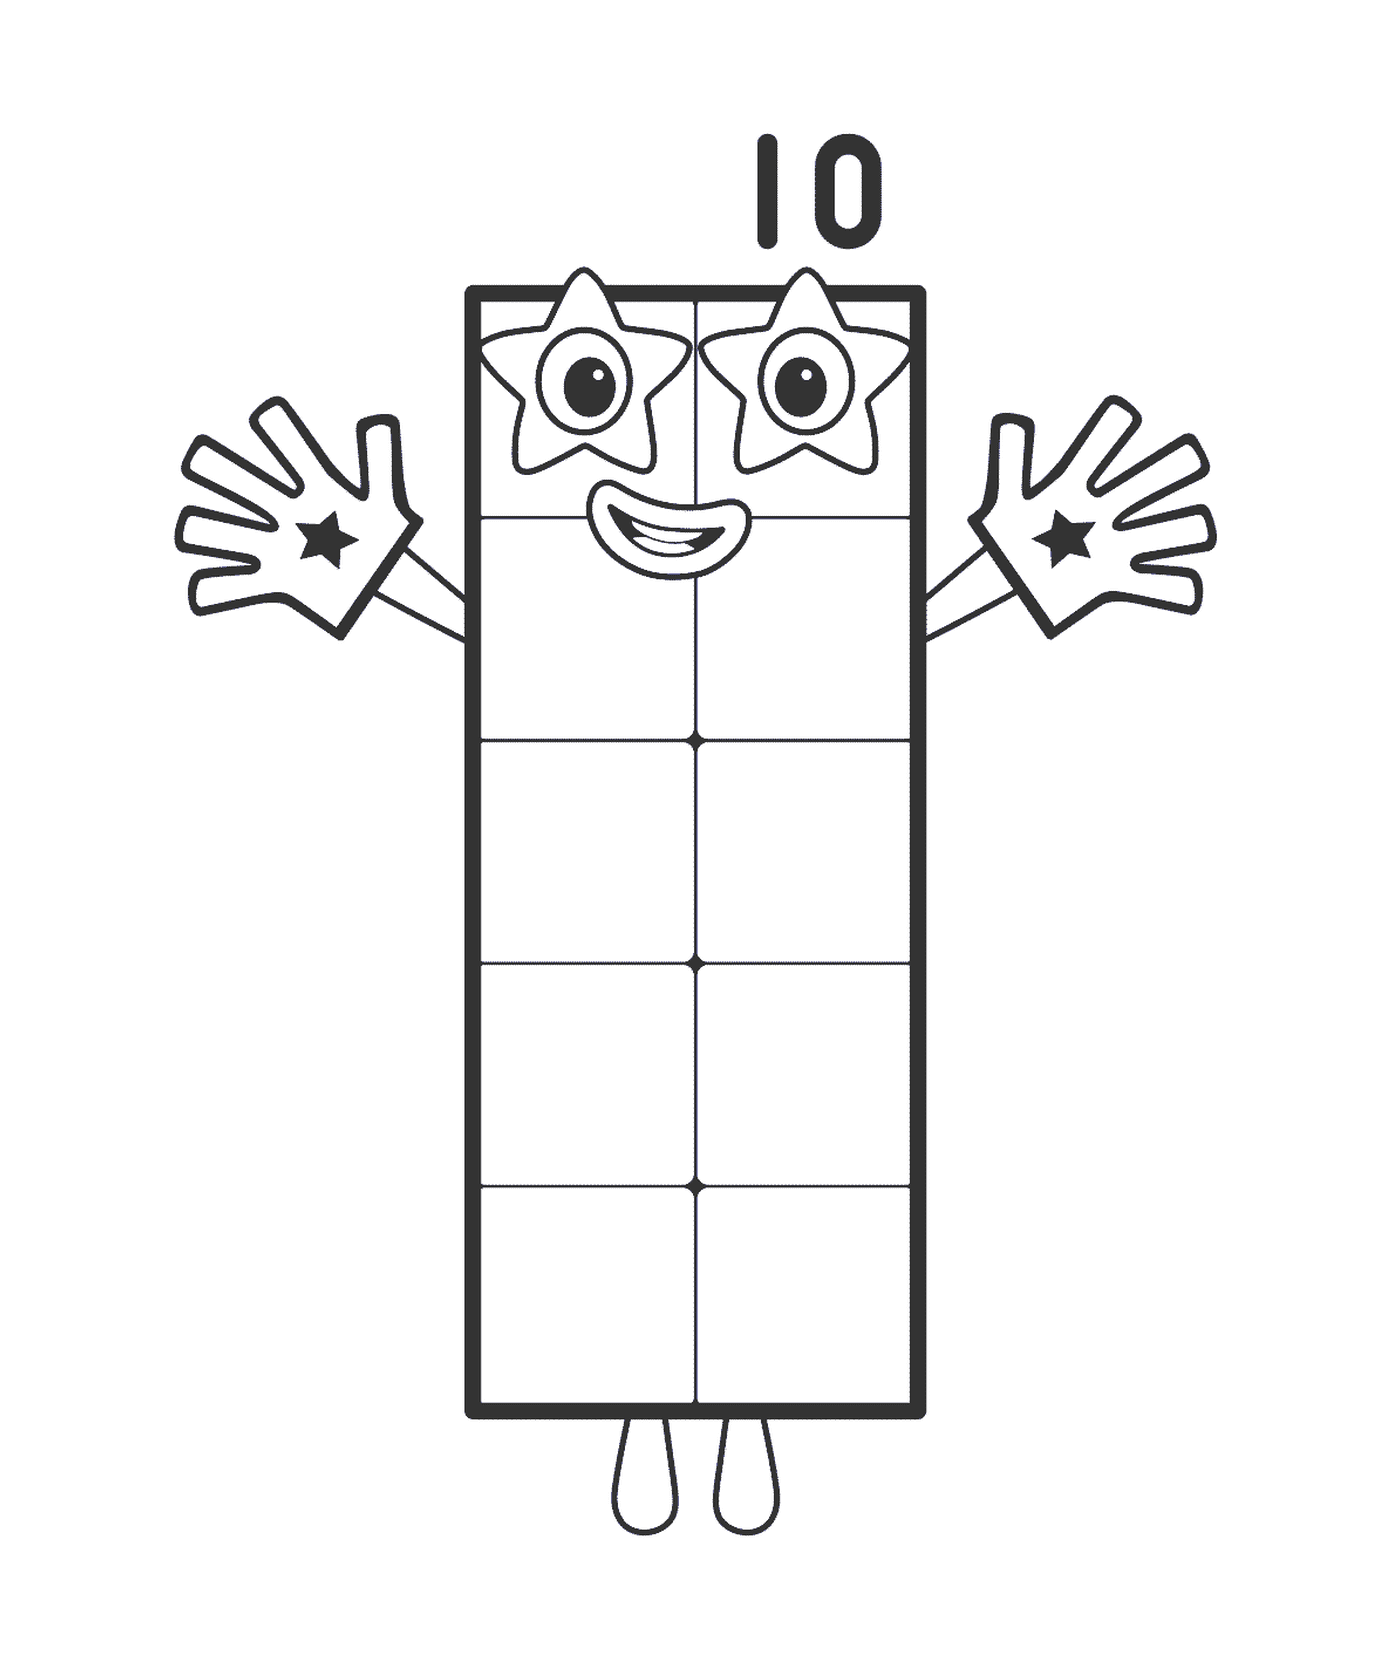  Rectángulo número 10, forma rectangular 